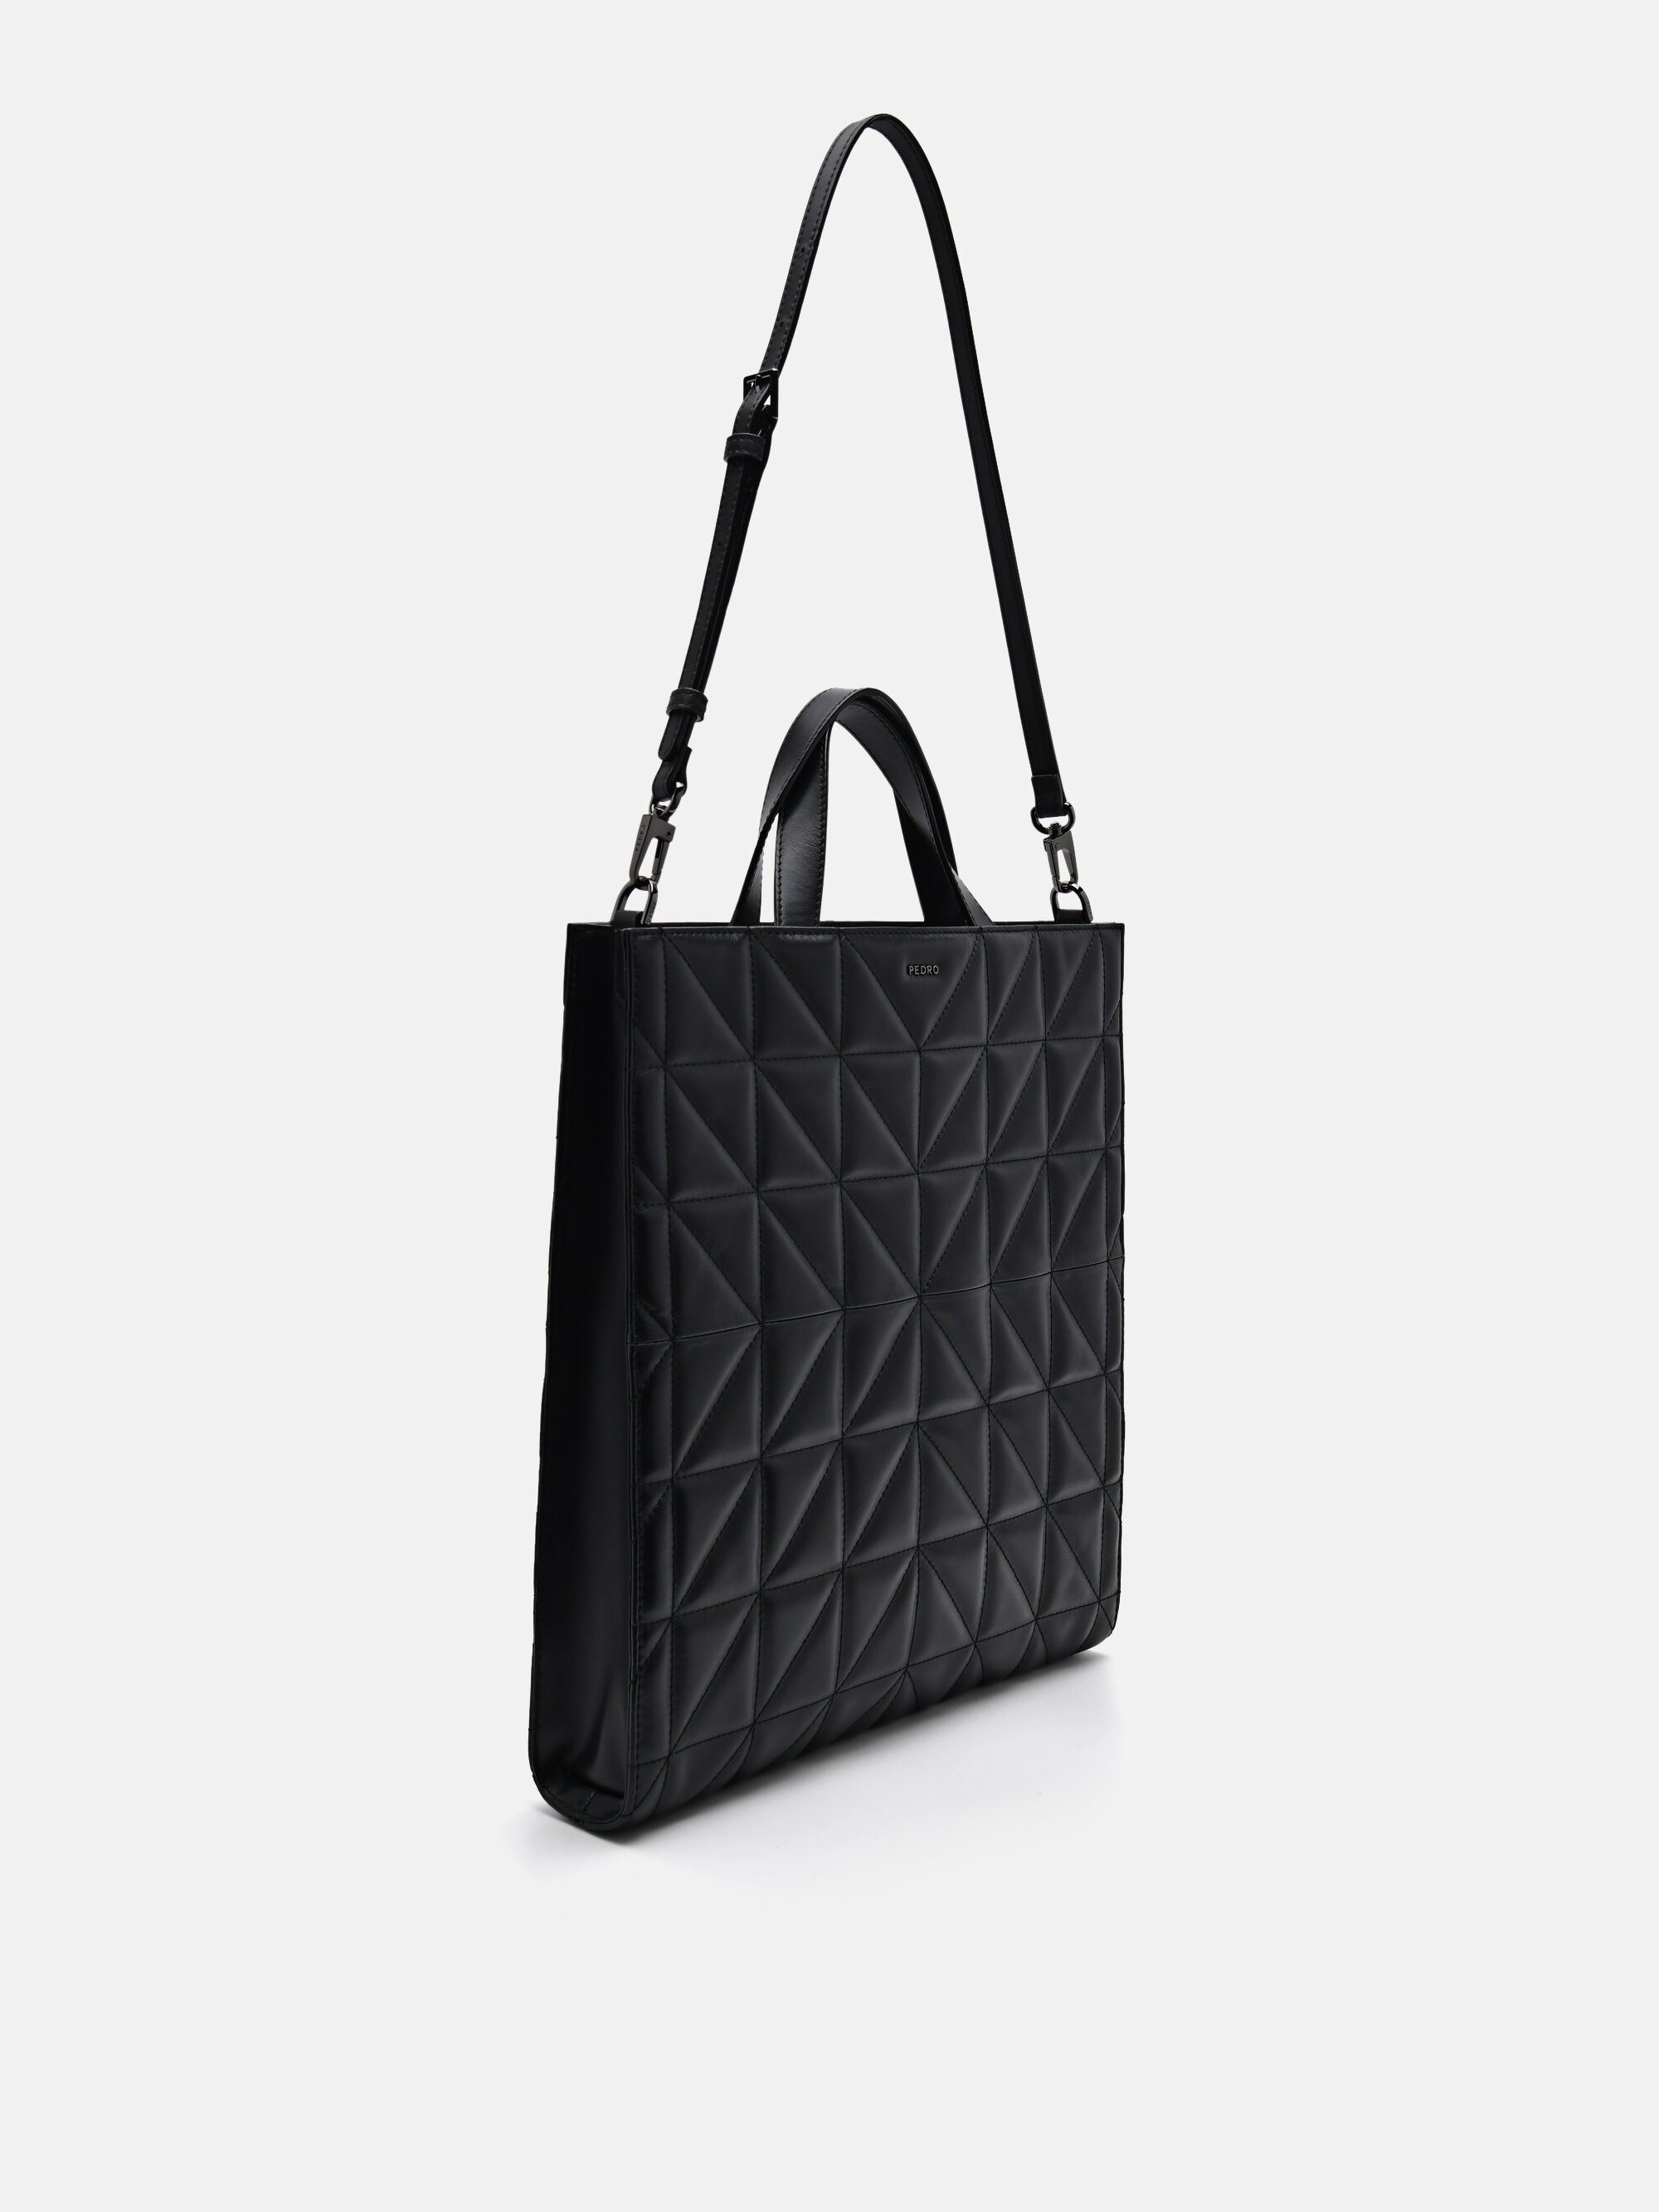 PEDRO Studio Kayla Leather Tote Bag in Pixel, Black